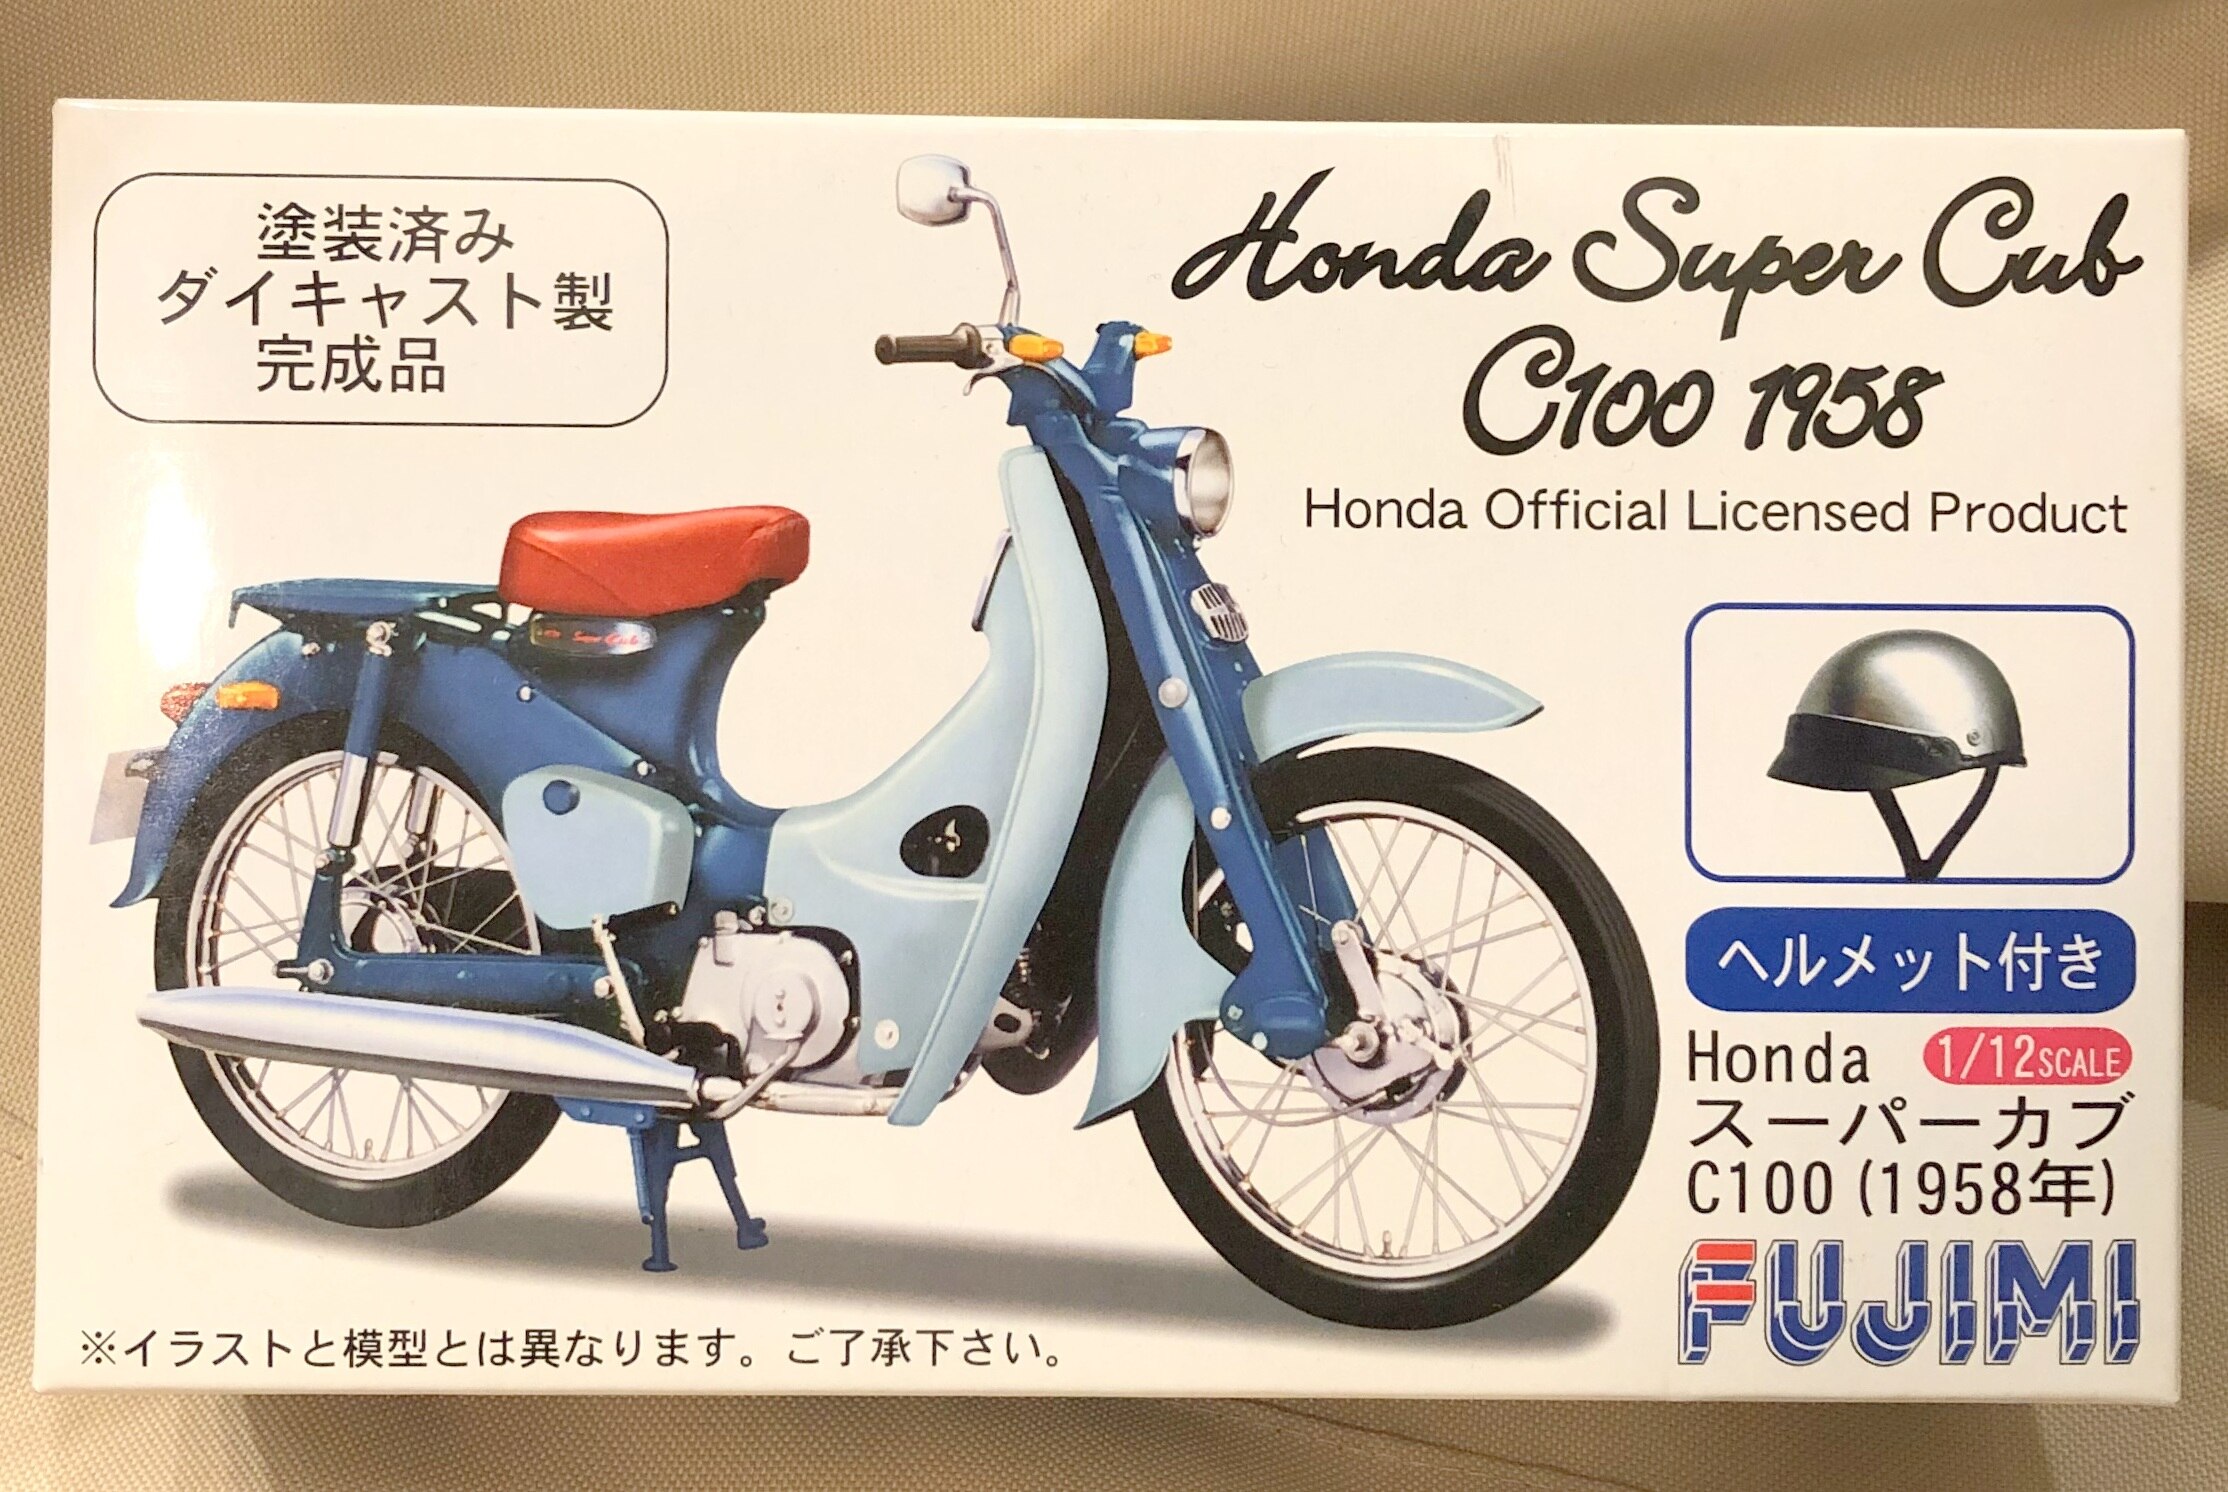 フジミ模型 1 12スケール Honda スーパーカブ C100 1958 1535 まんだらけ Mandarake